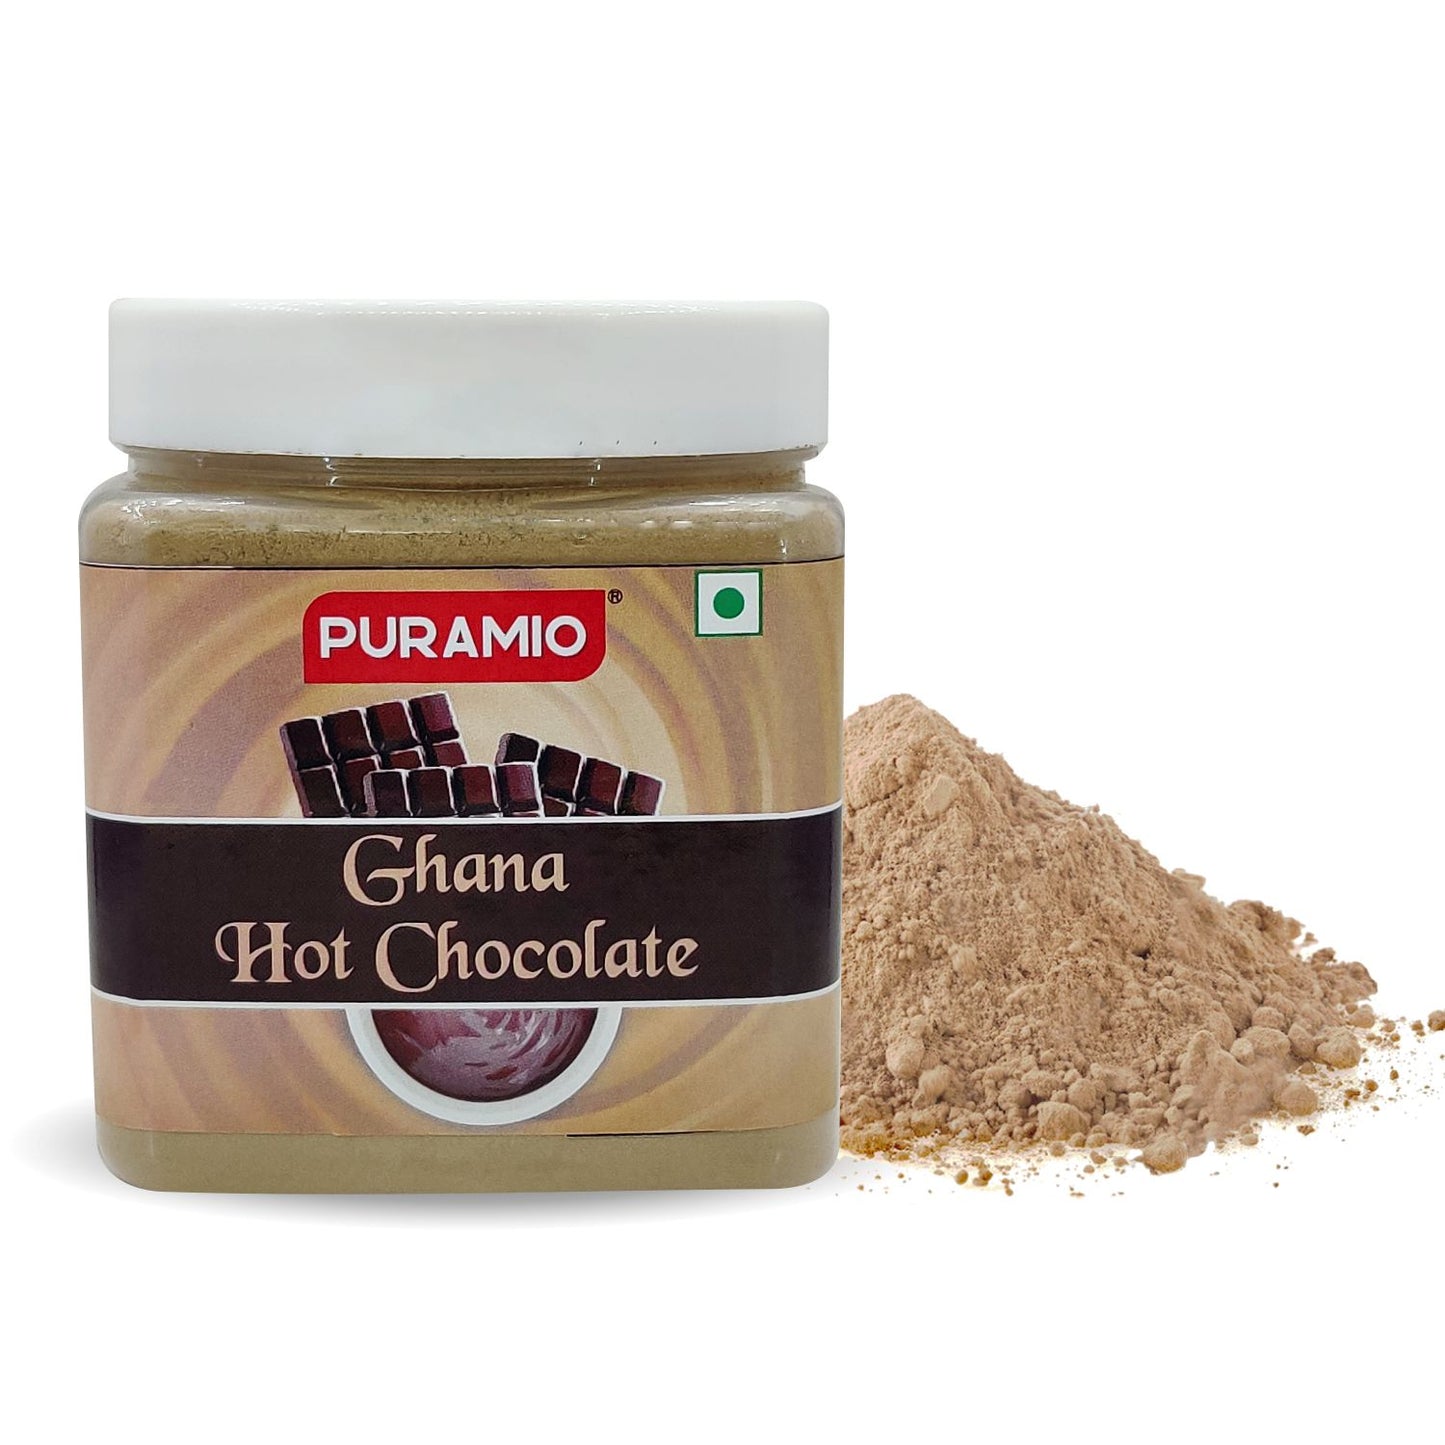 Puramio Ghana HOT Chocolate